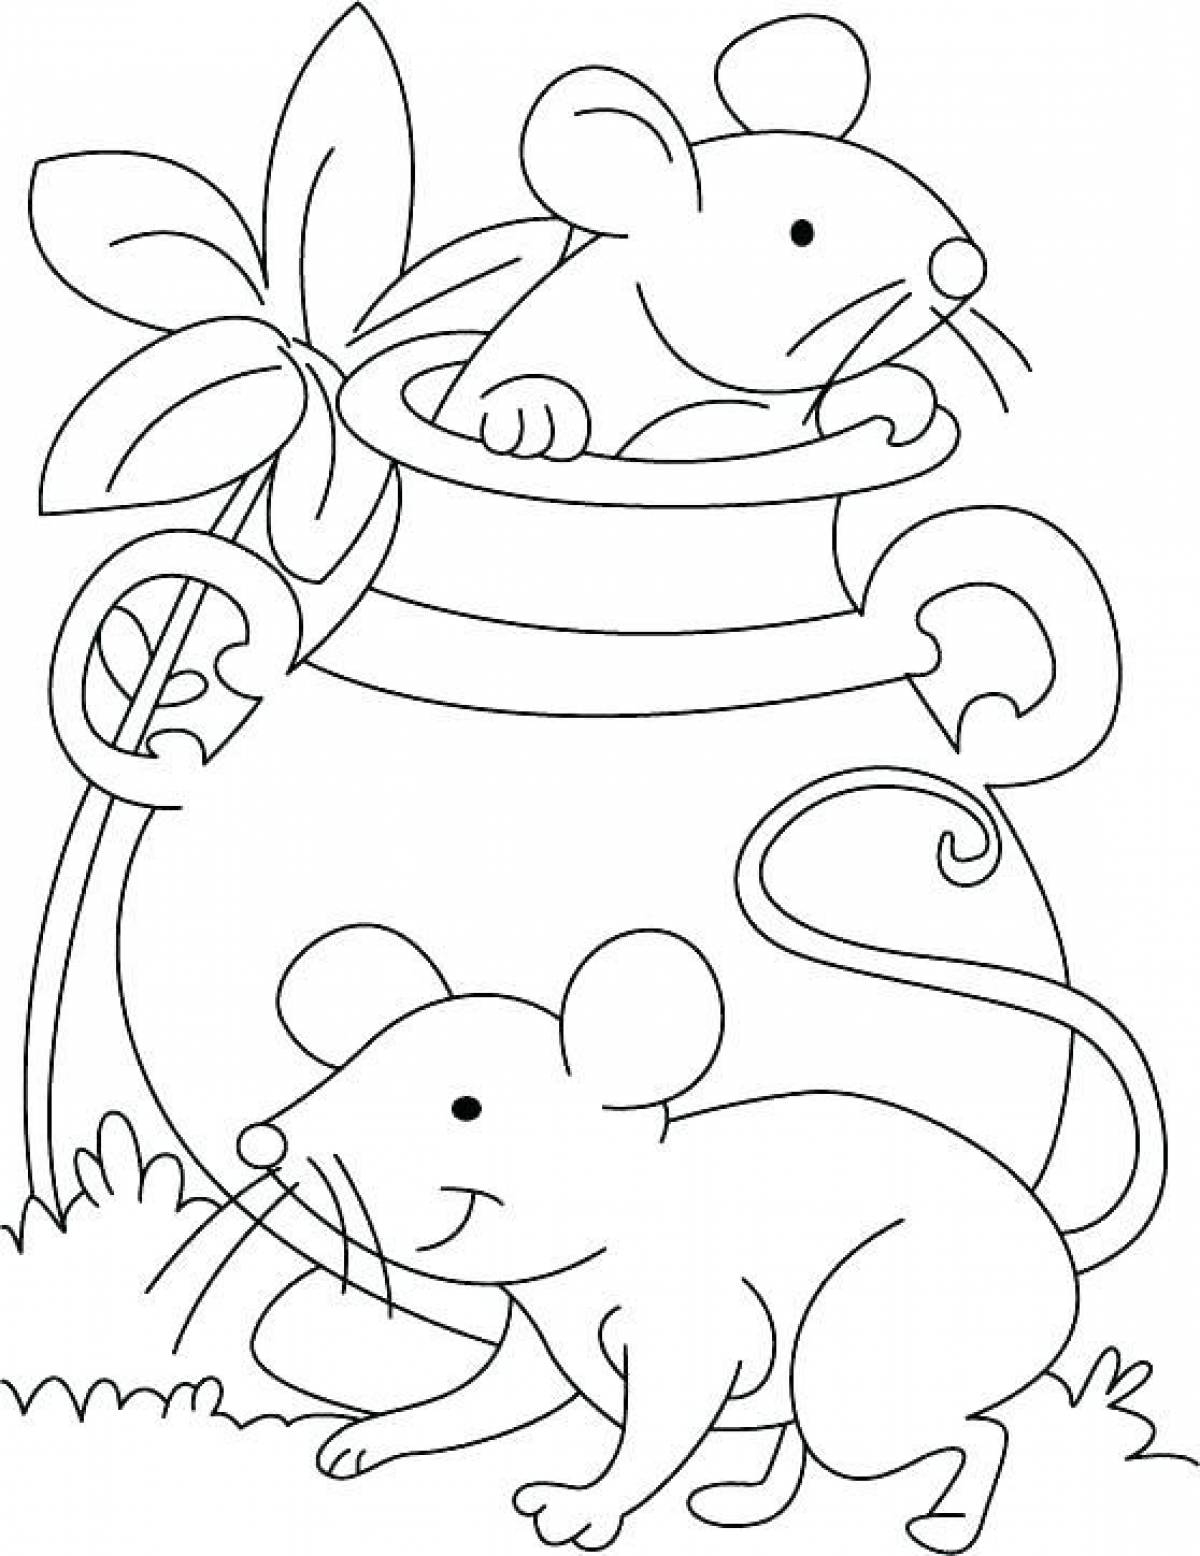 Раскраска мышь распечатать. Раскраска мышка. Мышка раскраска для детей. Vsif раскраска для детей. Мышонок раскраска для детей.